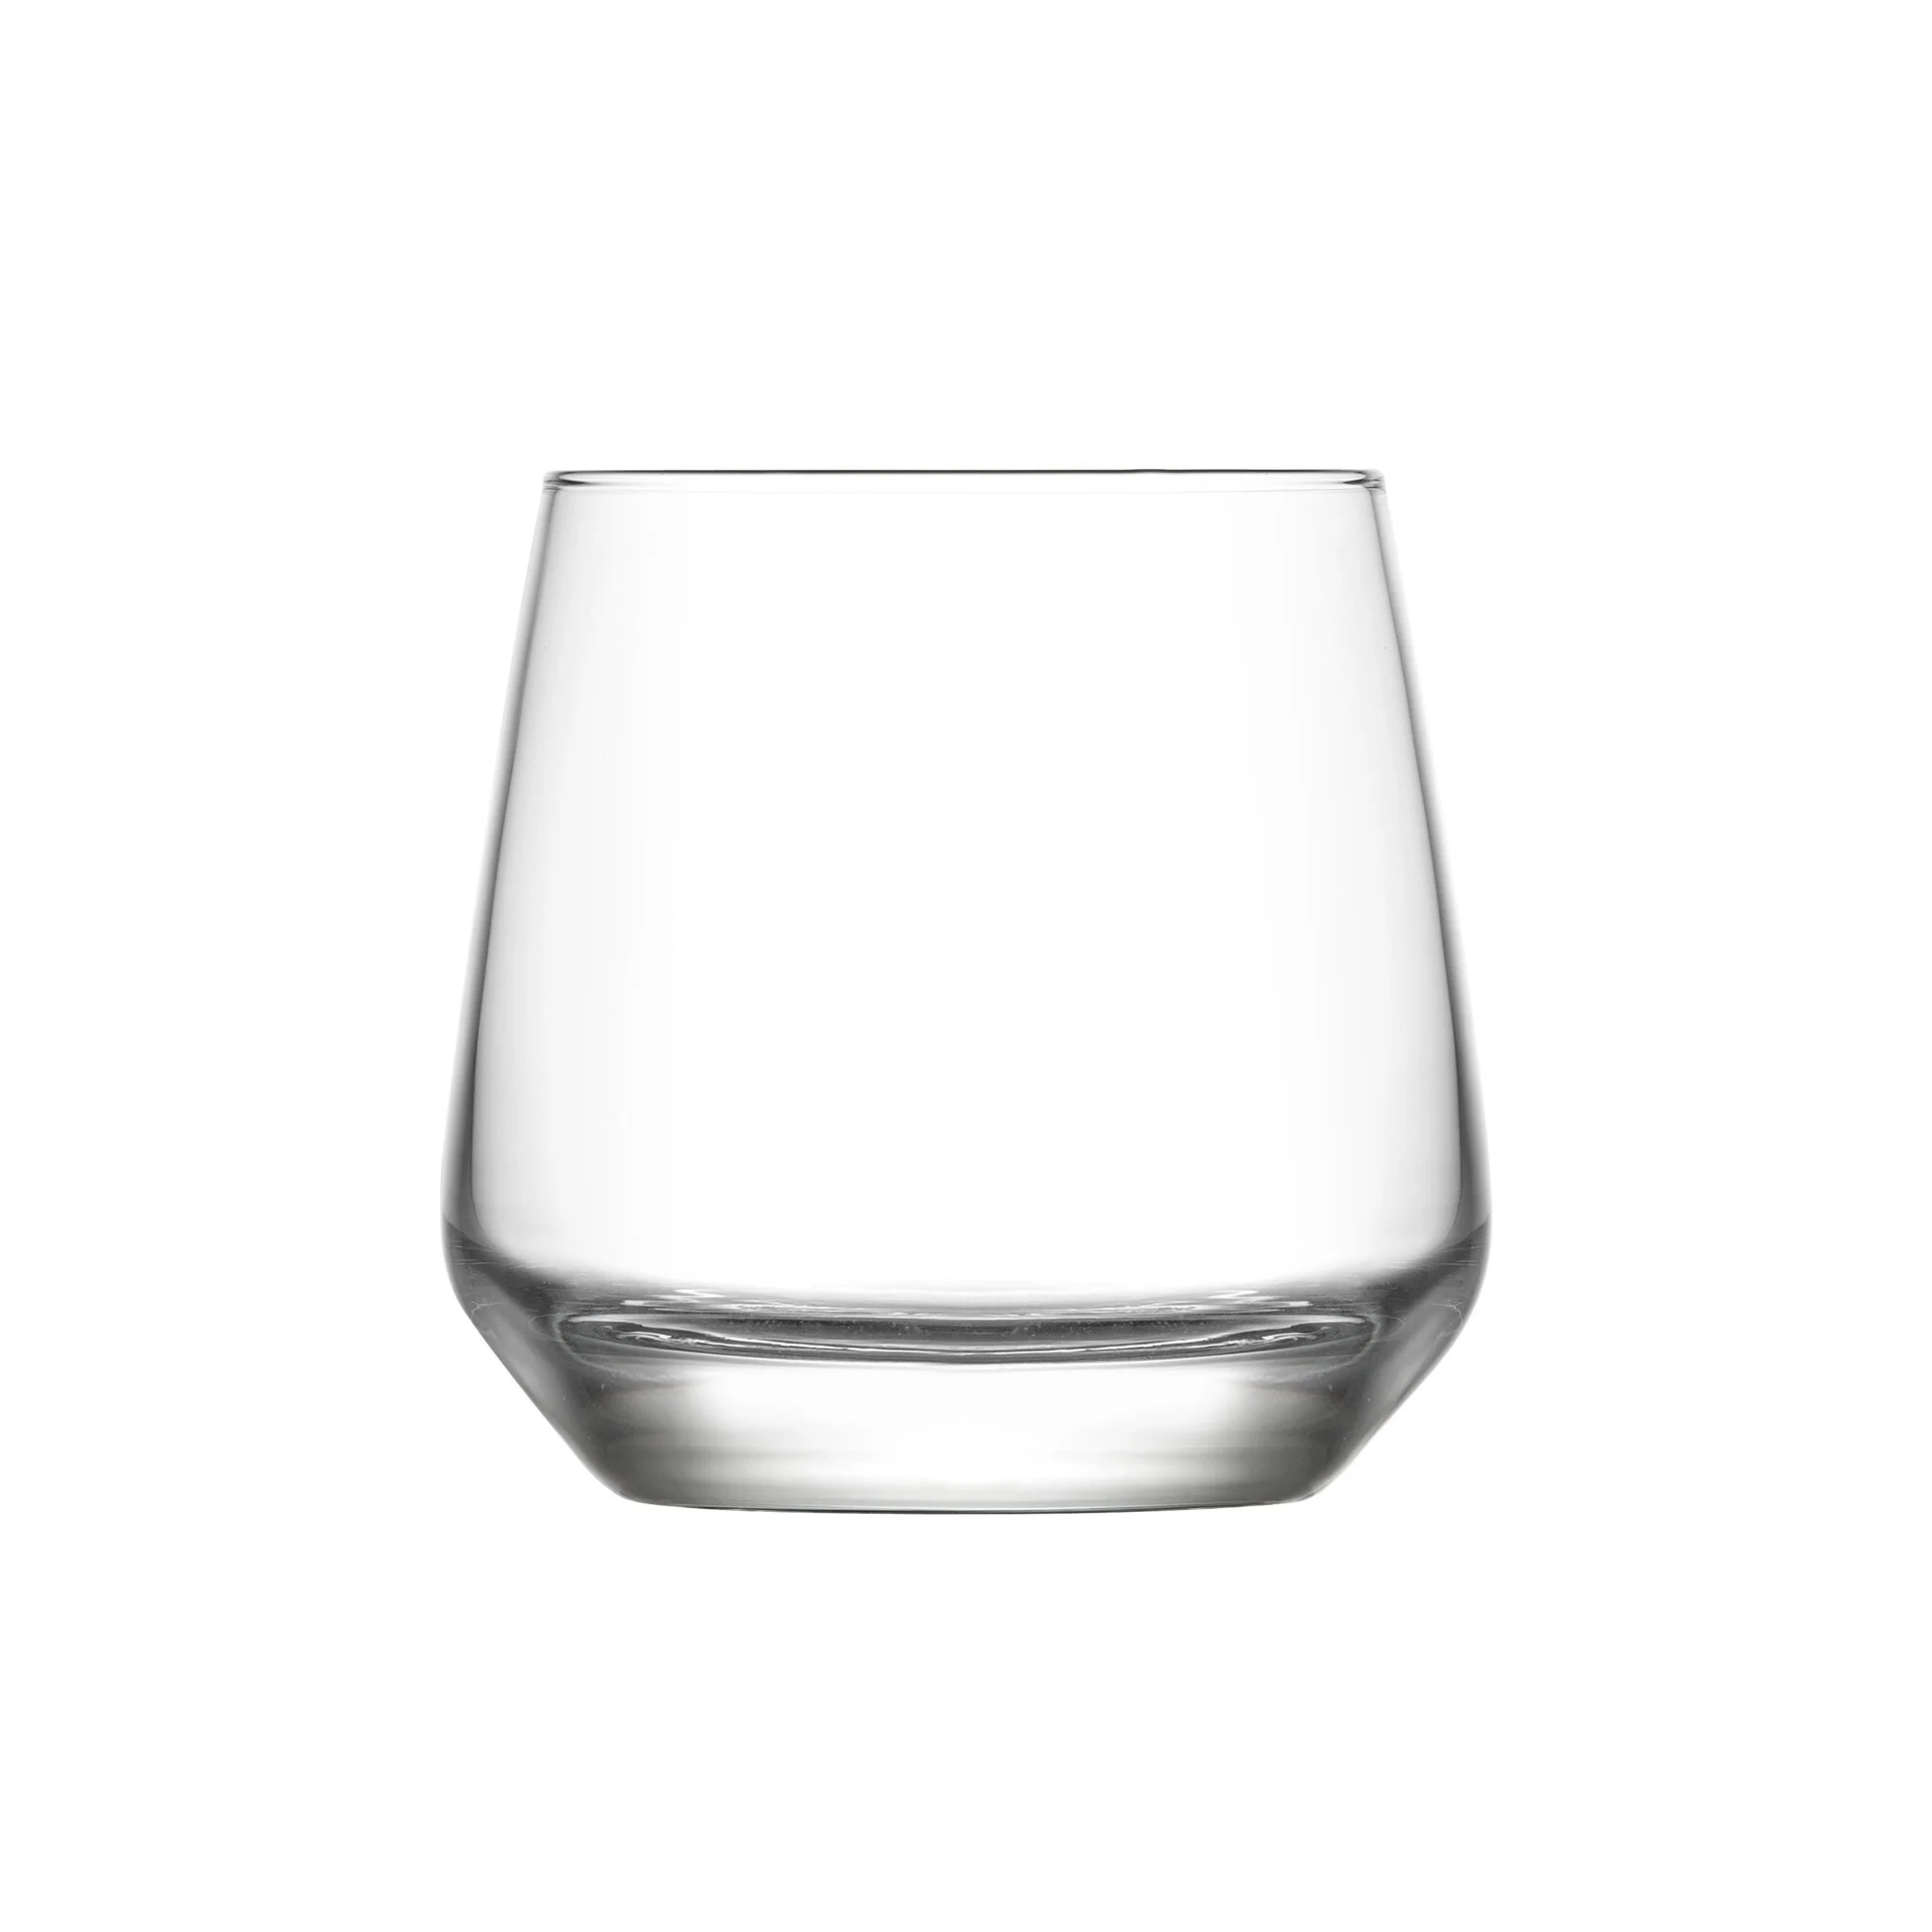 Gotë qelqi për ujë Lal (12 copë), 345 ml